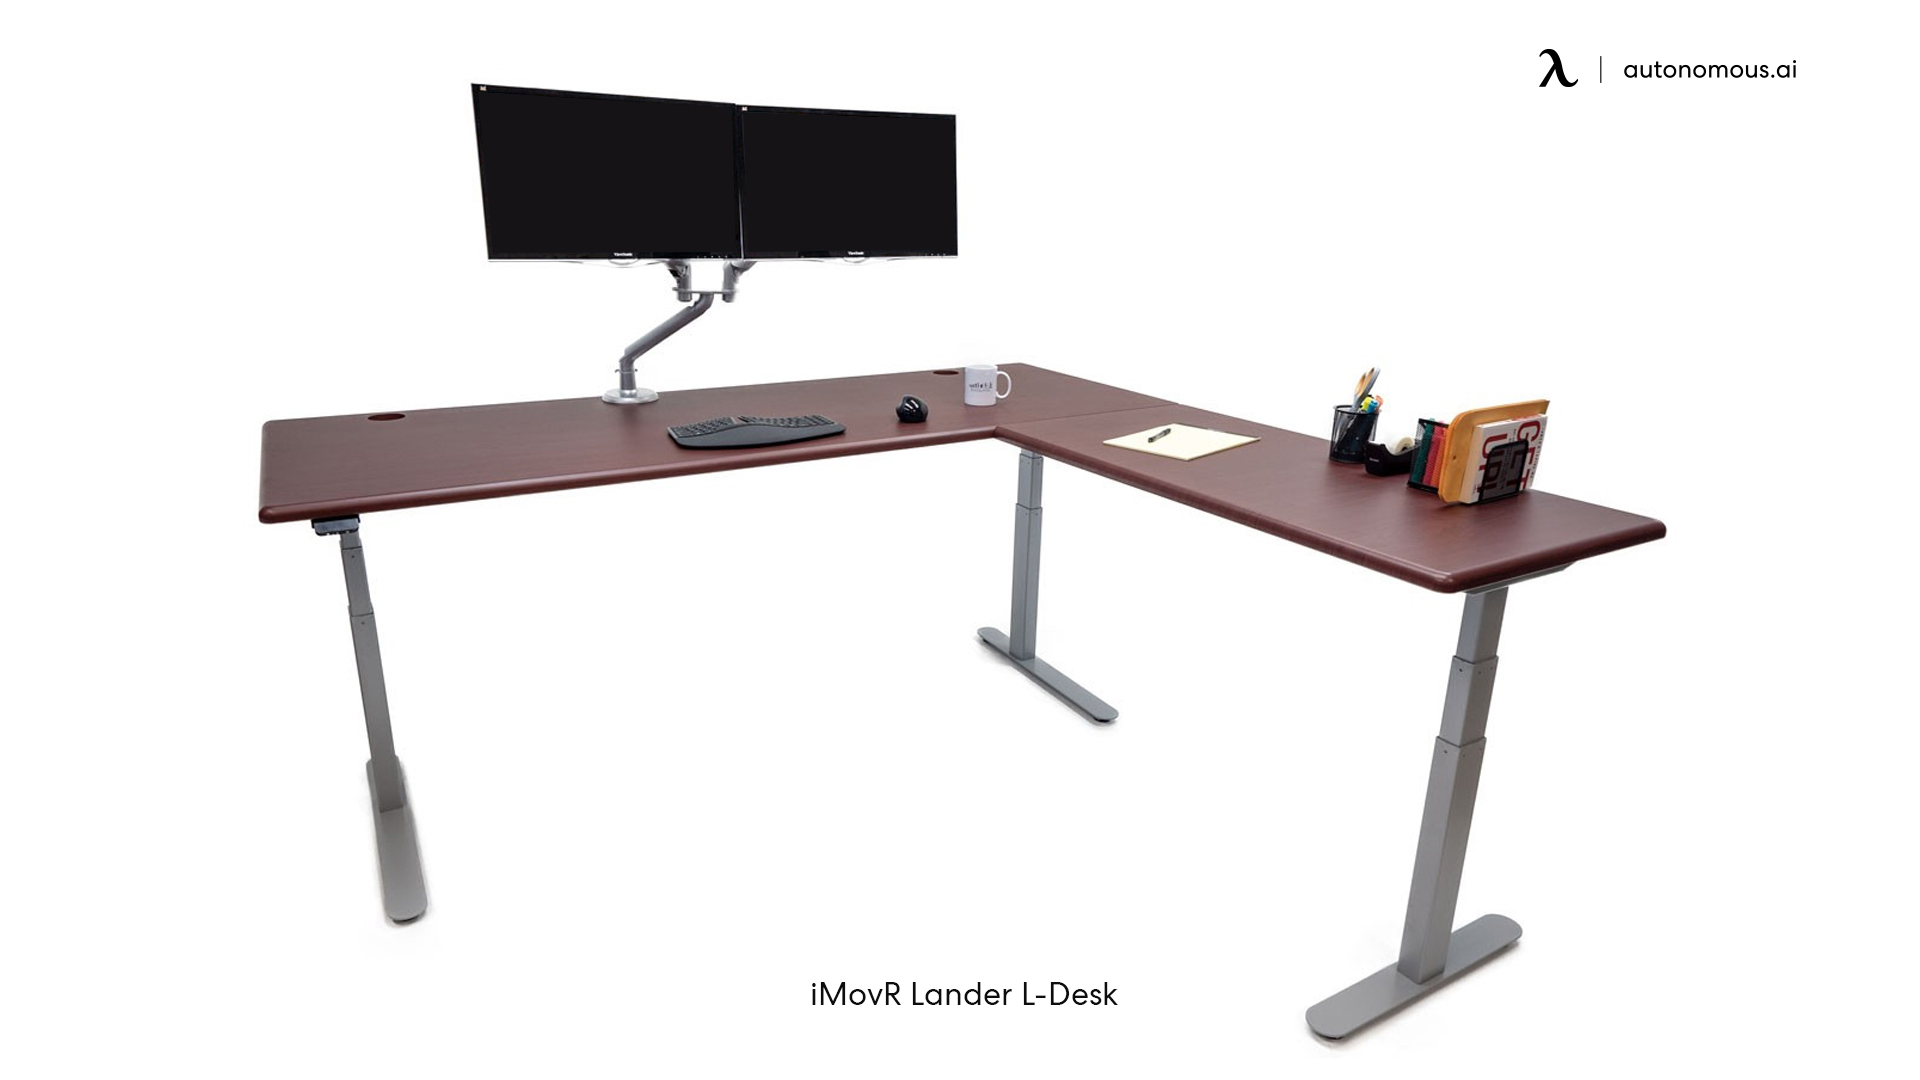 iMovR Lander L-Desk